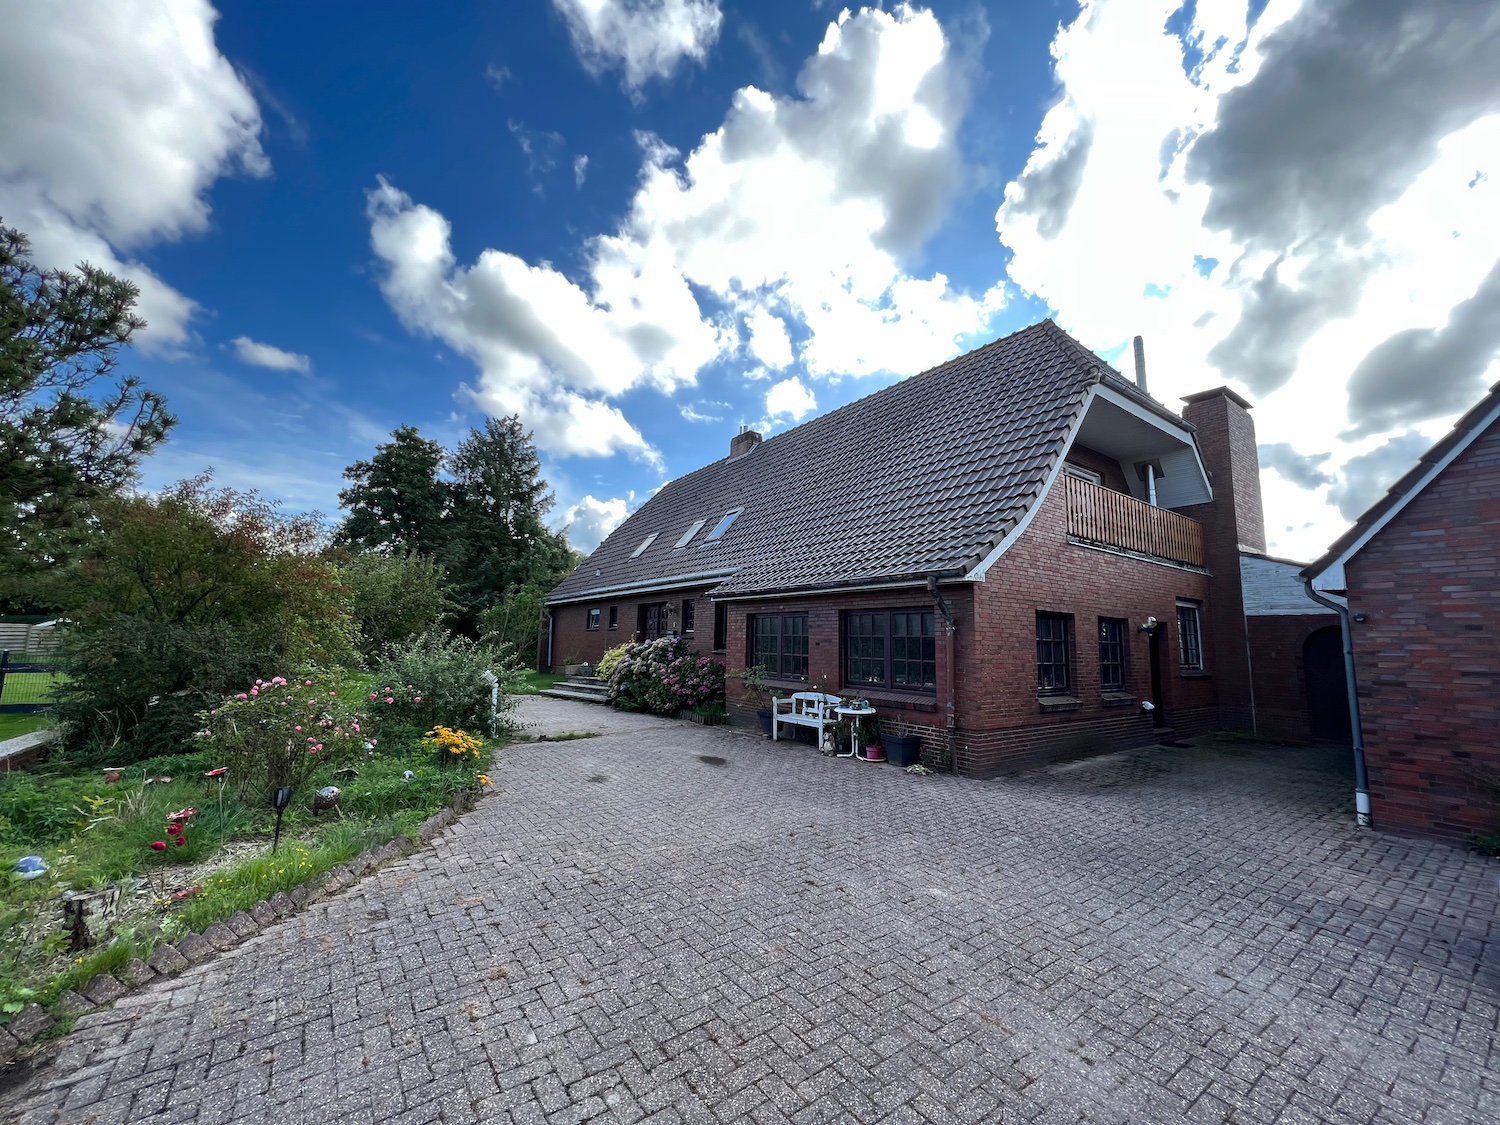 PROVISIONSFREI in Wittmund: Ländliche Idylle & Weitsicht inklusive - geräumiges  Wohnhaus mit Potenzial auf großem Grundstück Immobilie kaufen an der Nordseeküste